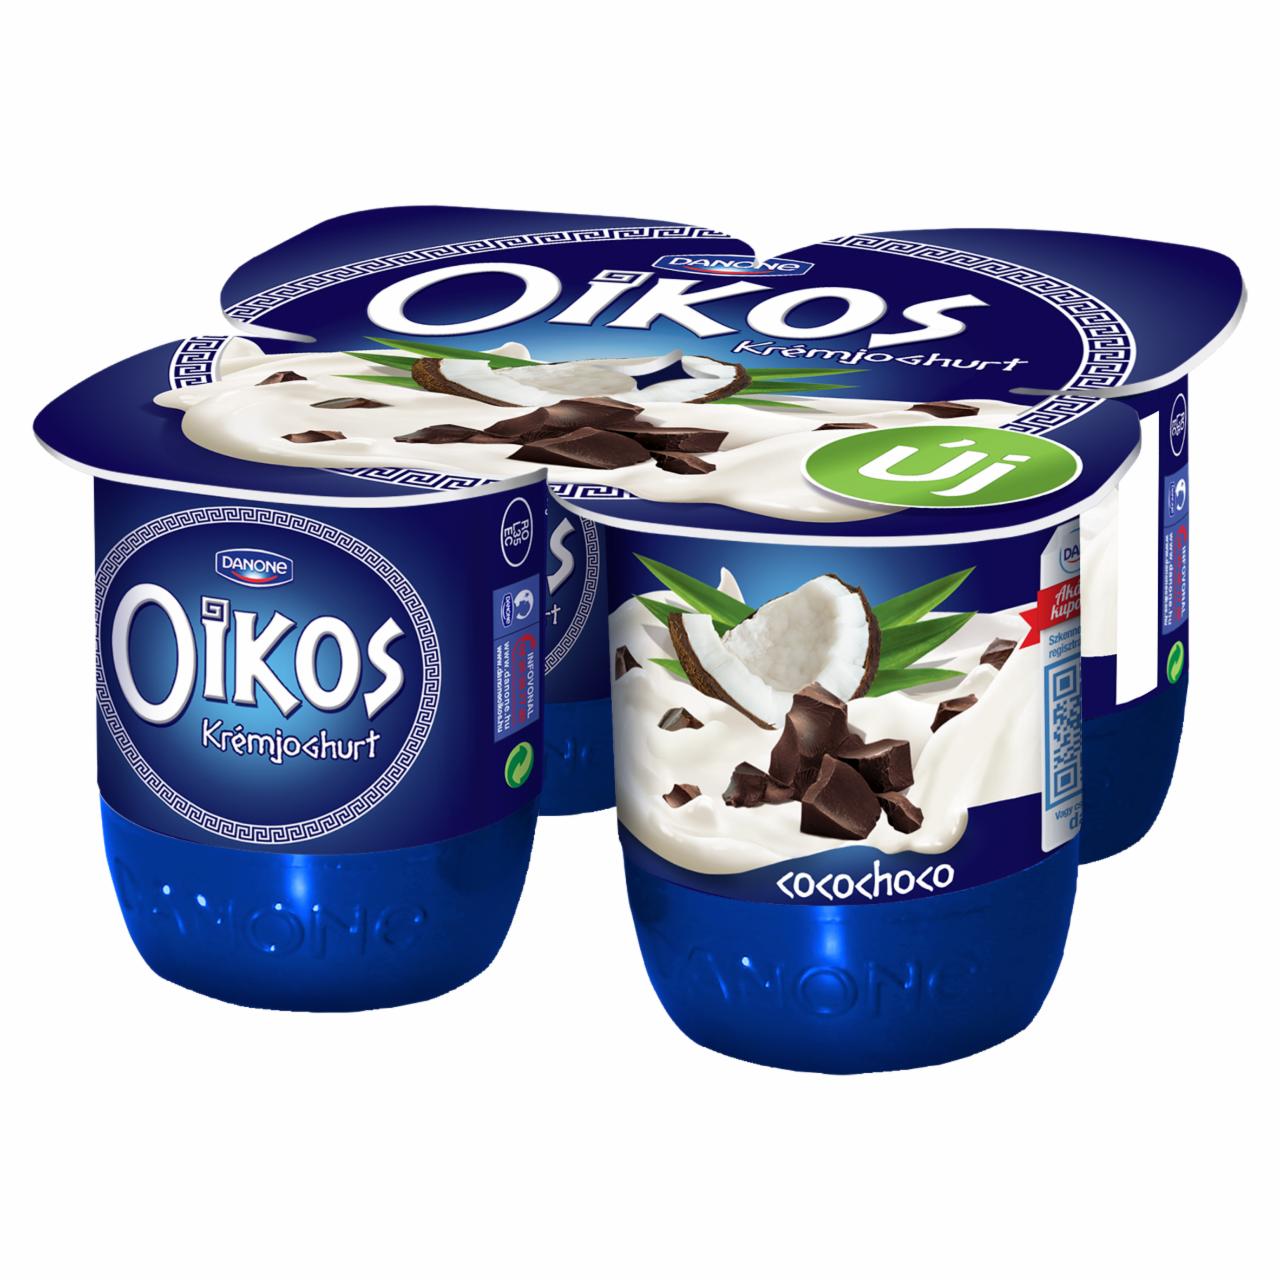 Képek - Oikos Görög csokoládédarabos-kókuszízű élőflórás krémjoghurt Danone